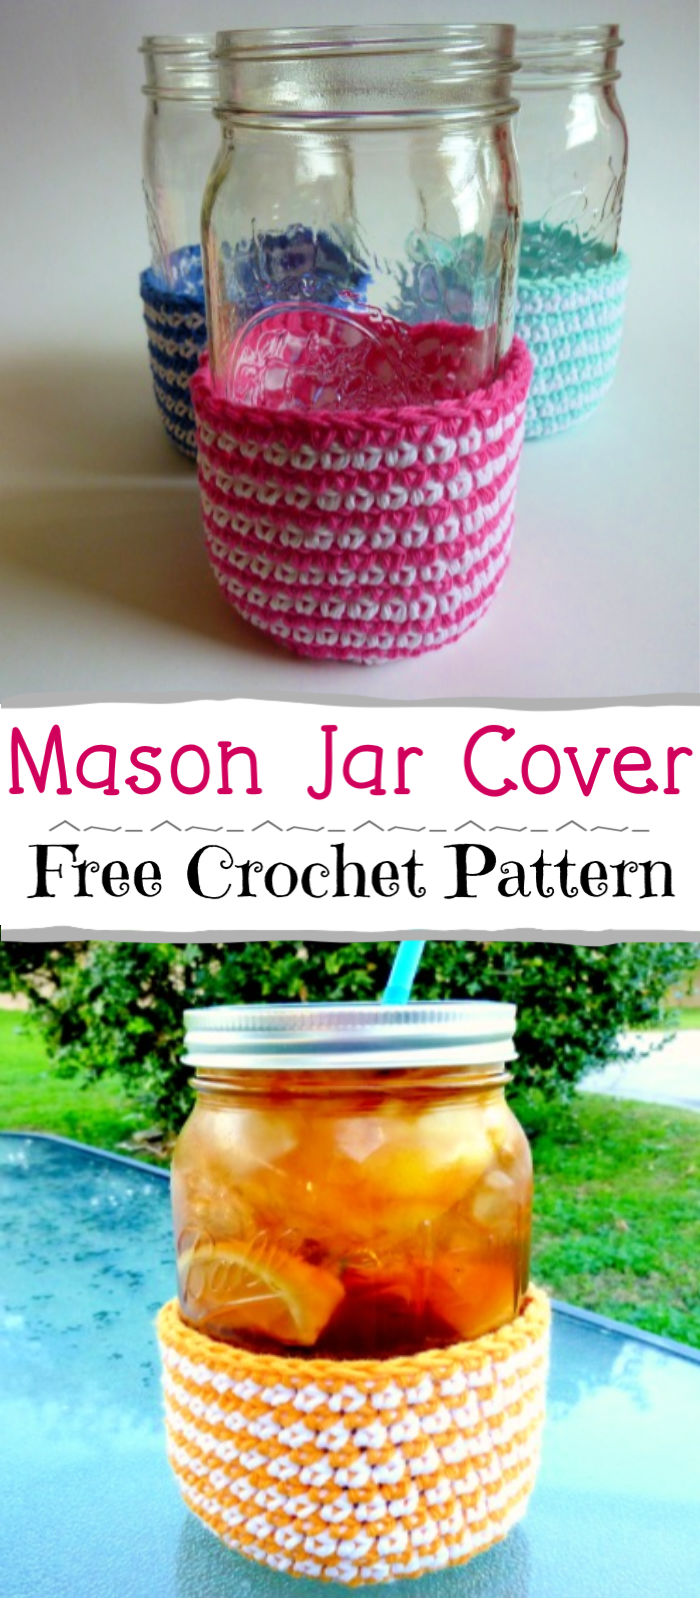 Free Crochet Mason Jar Covers Pattern